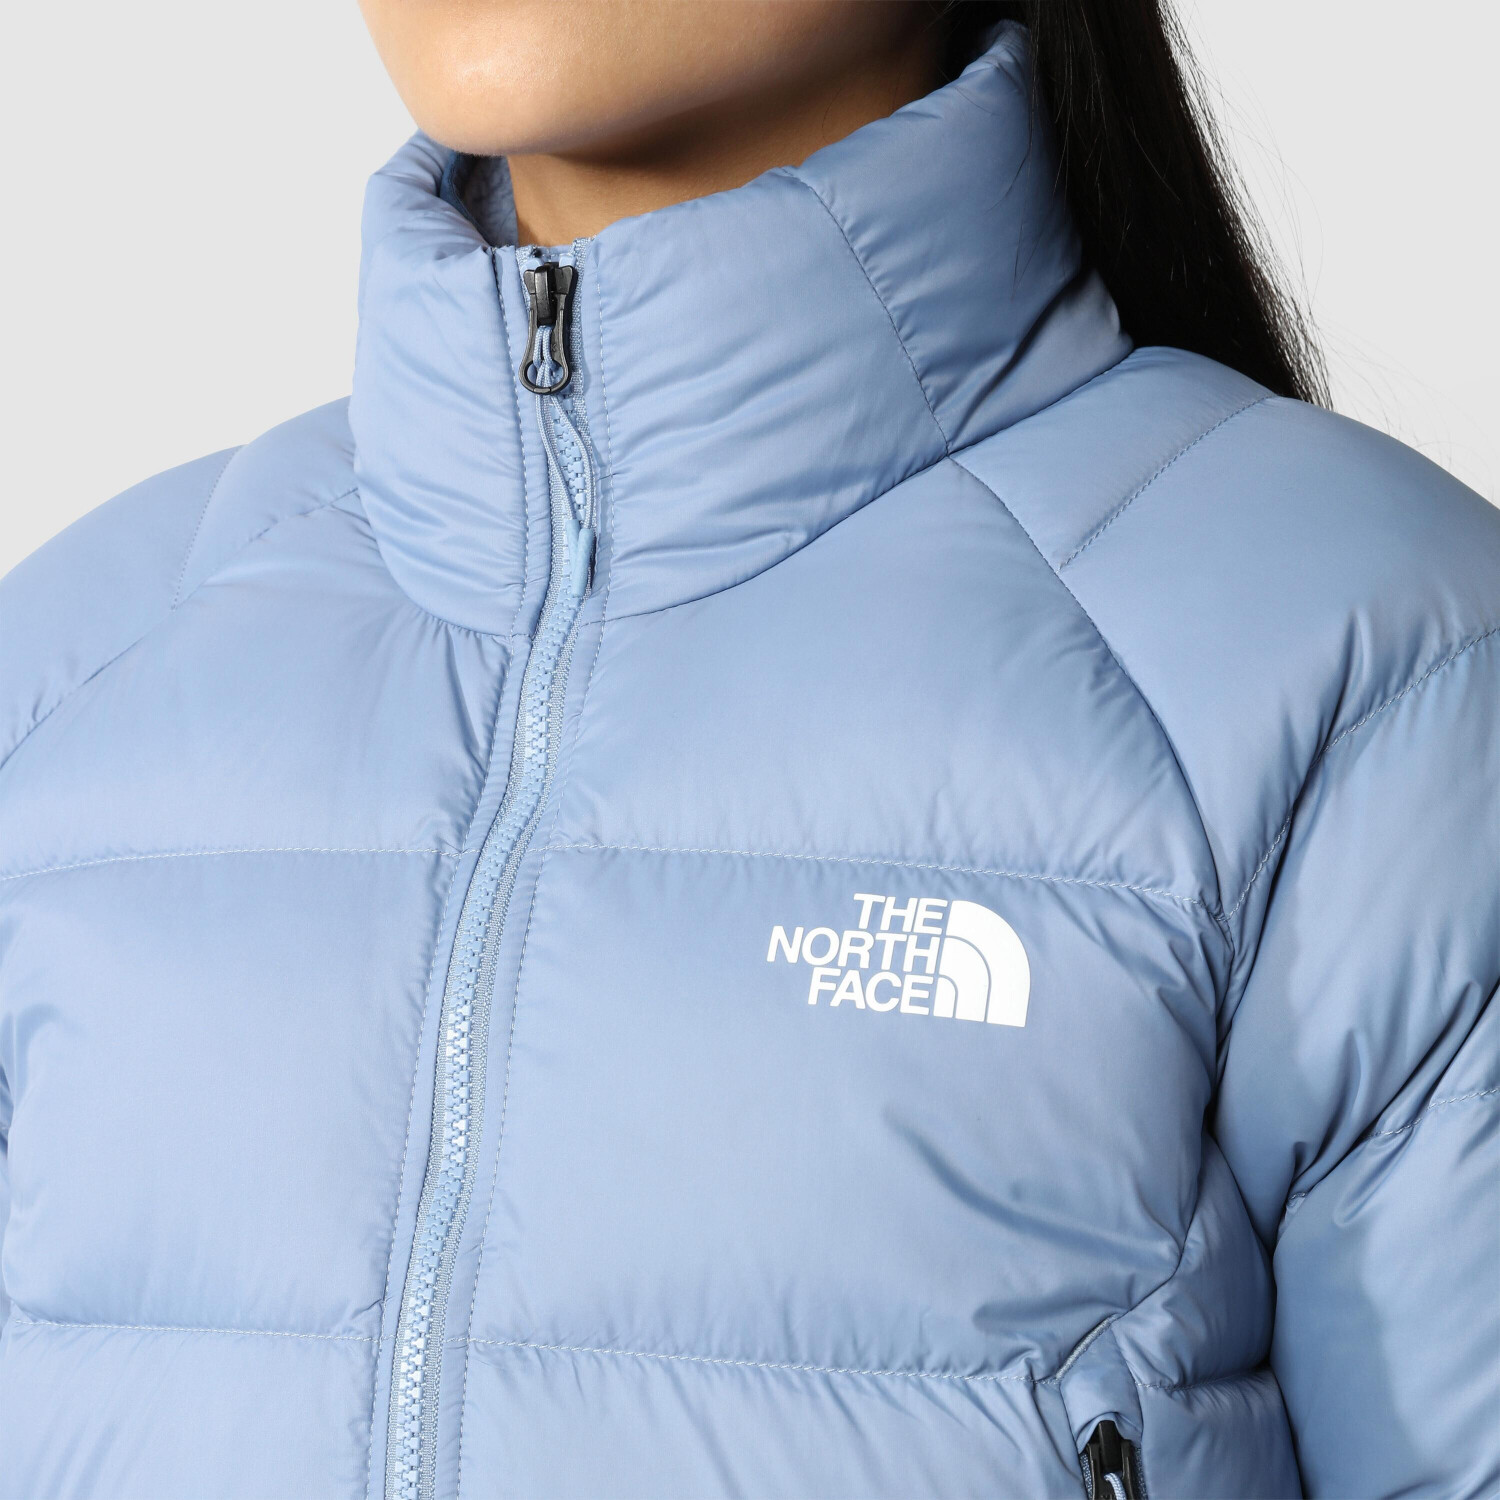 The North Face Women's Hyalite Down Jacket folk blue ab 127,99 € |  Preisvergleich bei